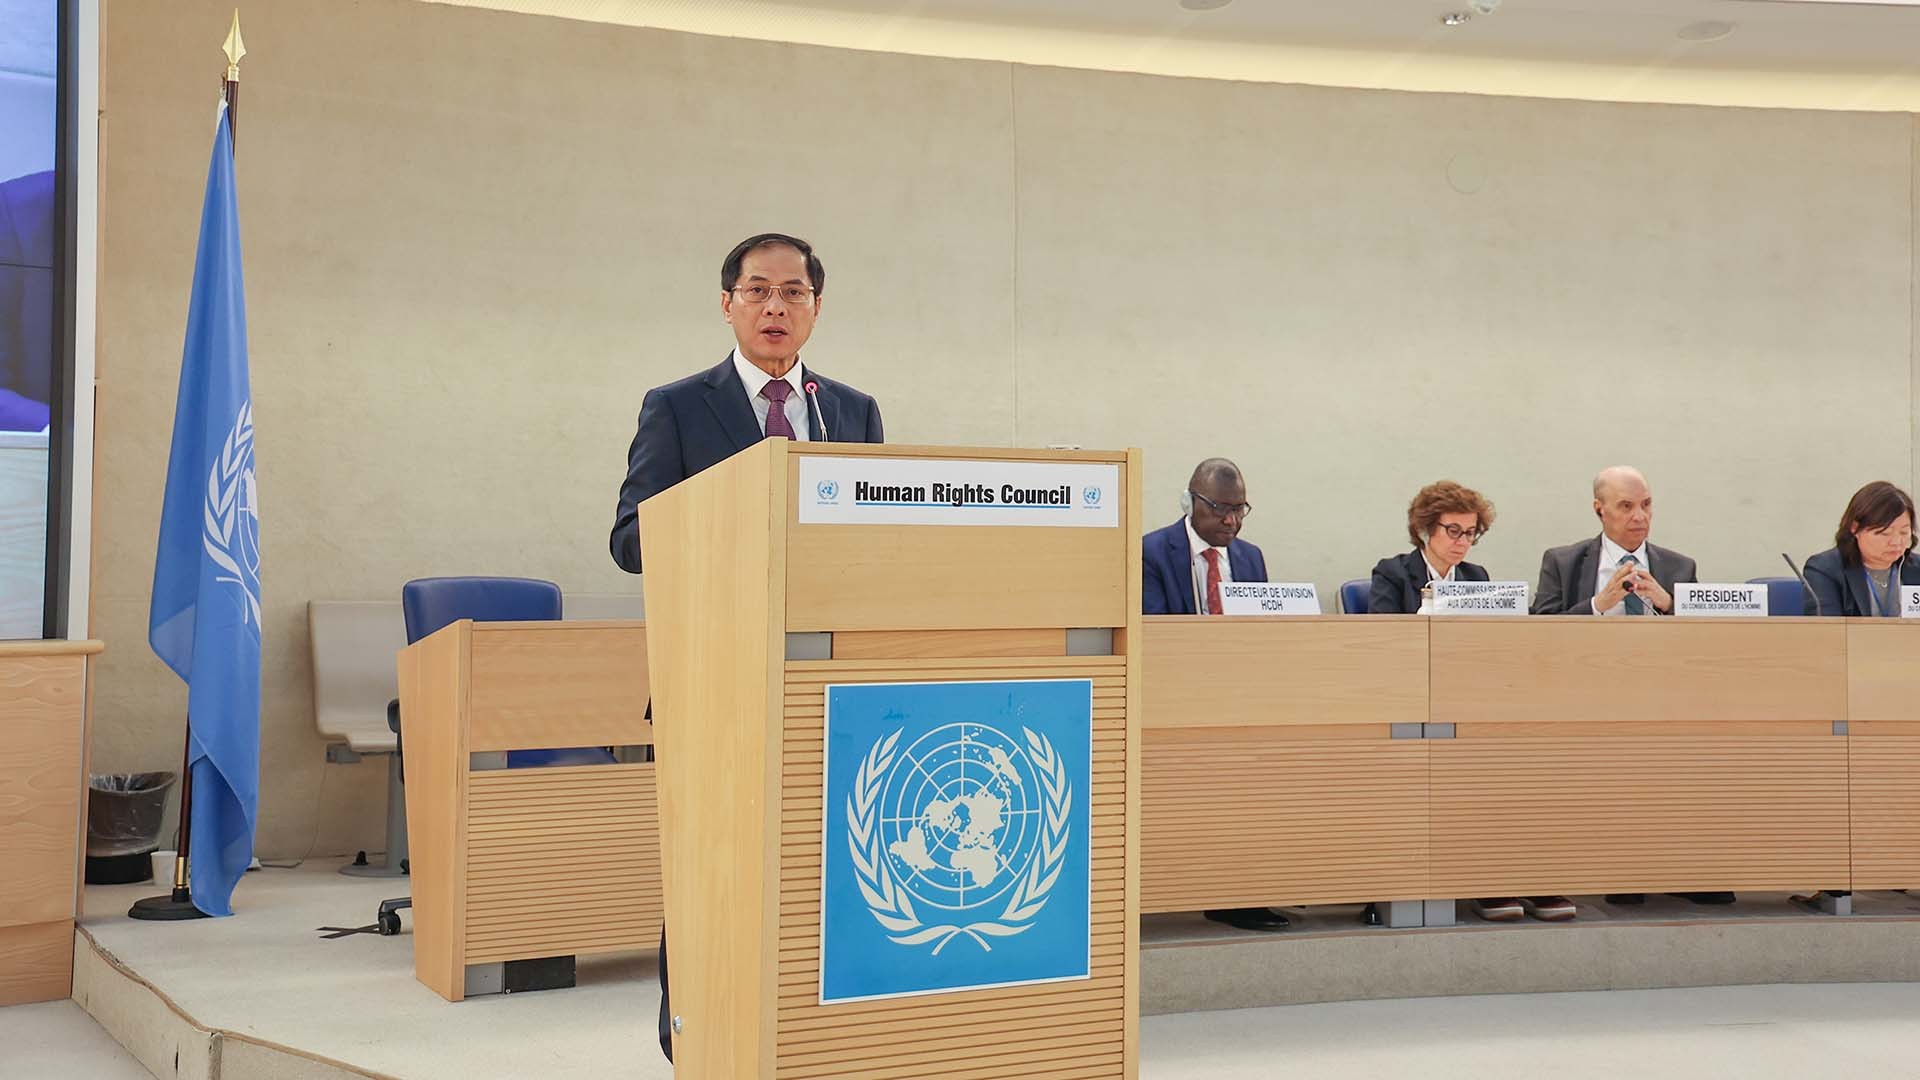 부이 탄 손(Bui Thanh Son) 장관은 55월 26일 스위스 제네바에서 열린 제2차 유엔 인권이사회 고위급 회의에서 연설했습니다. (사진: 낫퐁)